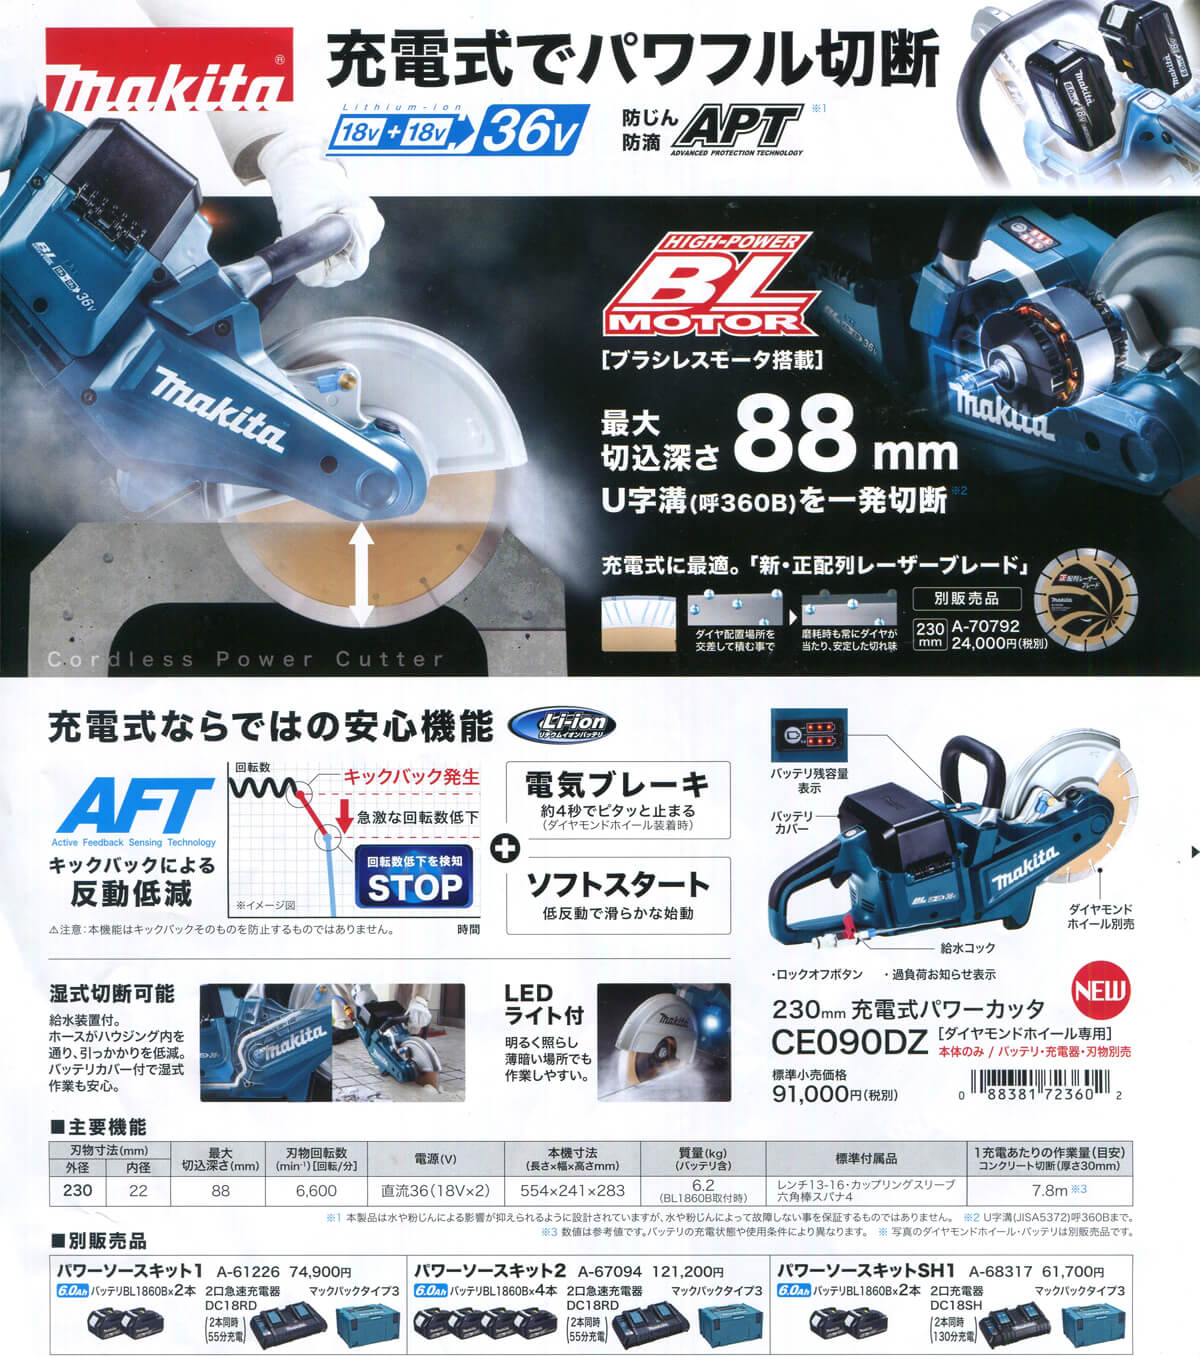 マキタ CE090DZ 230mm充電式パワーカッター ウエダ金物【公式サイト】